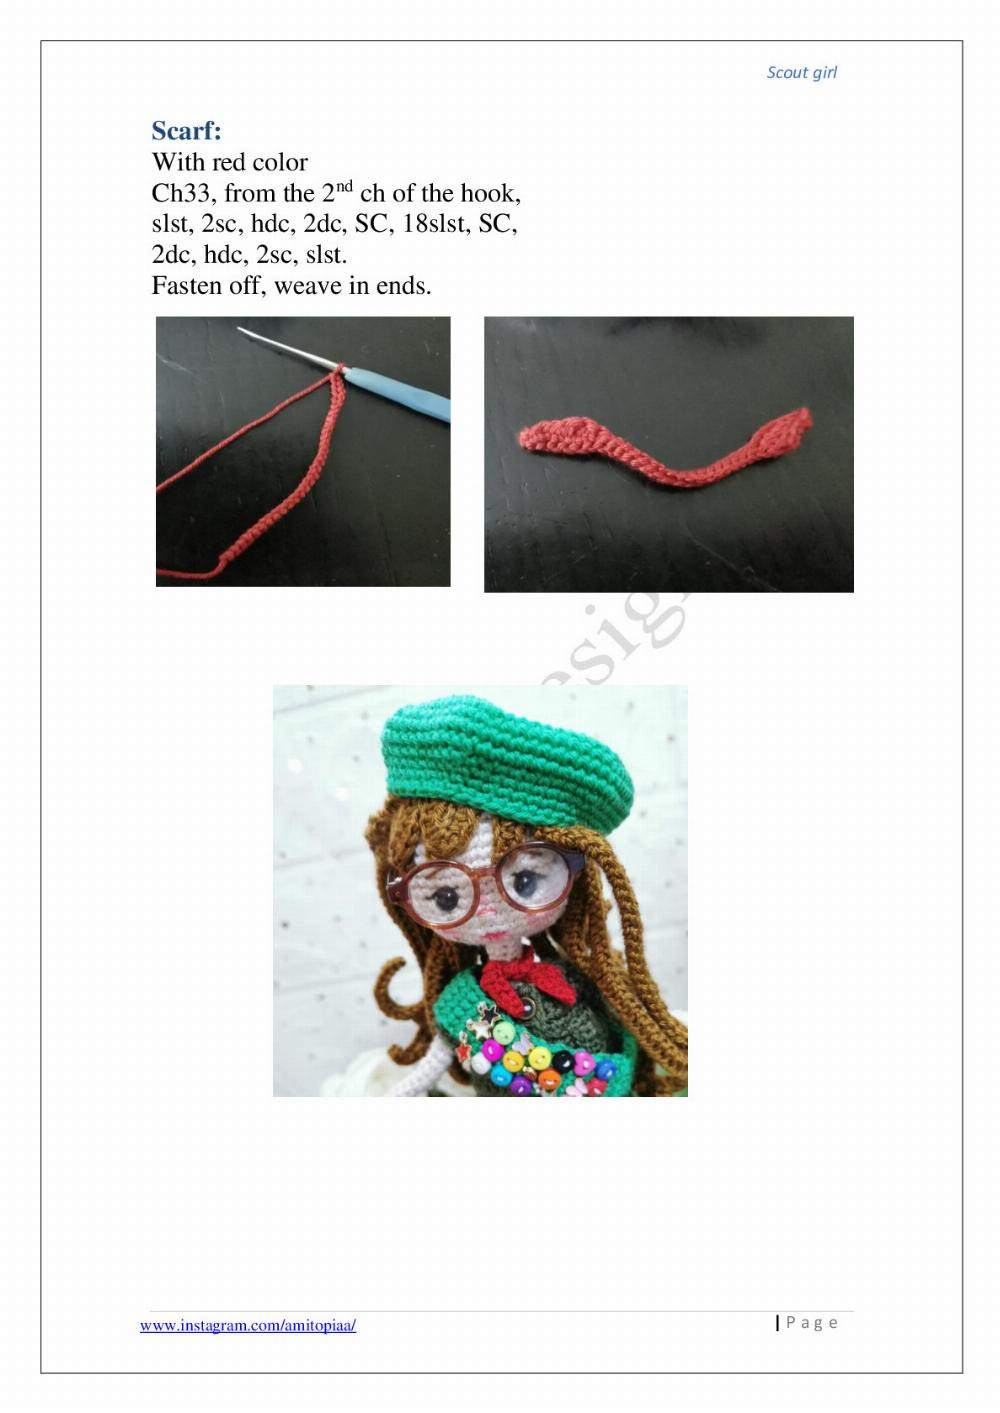 Scout girl crochet pattern